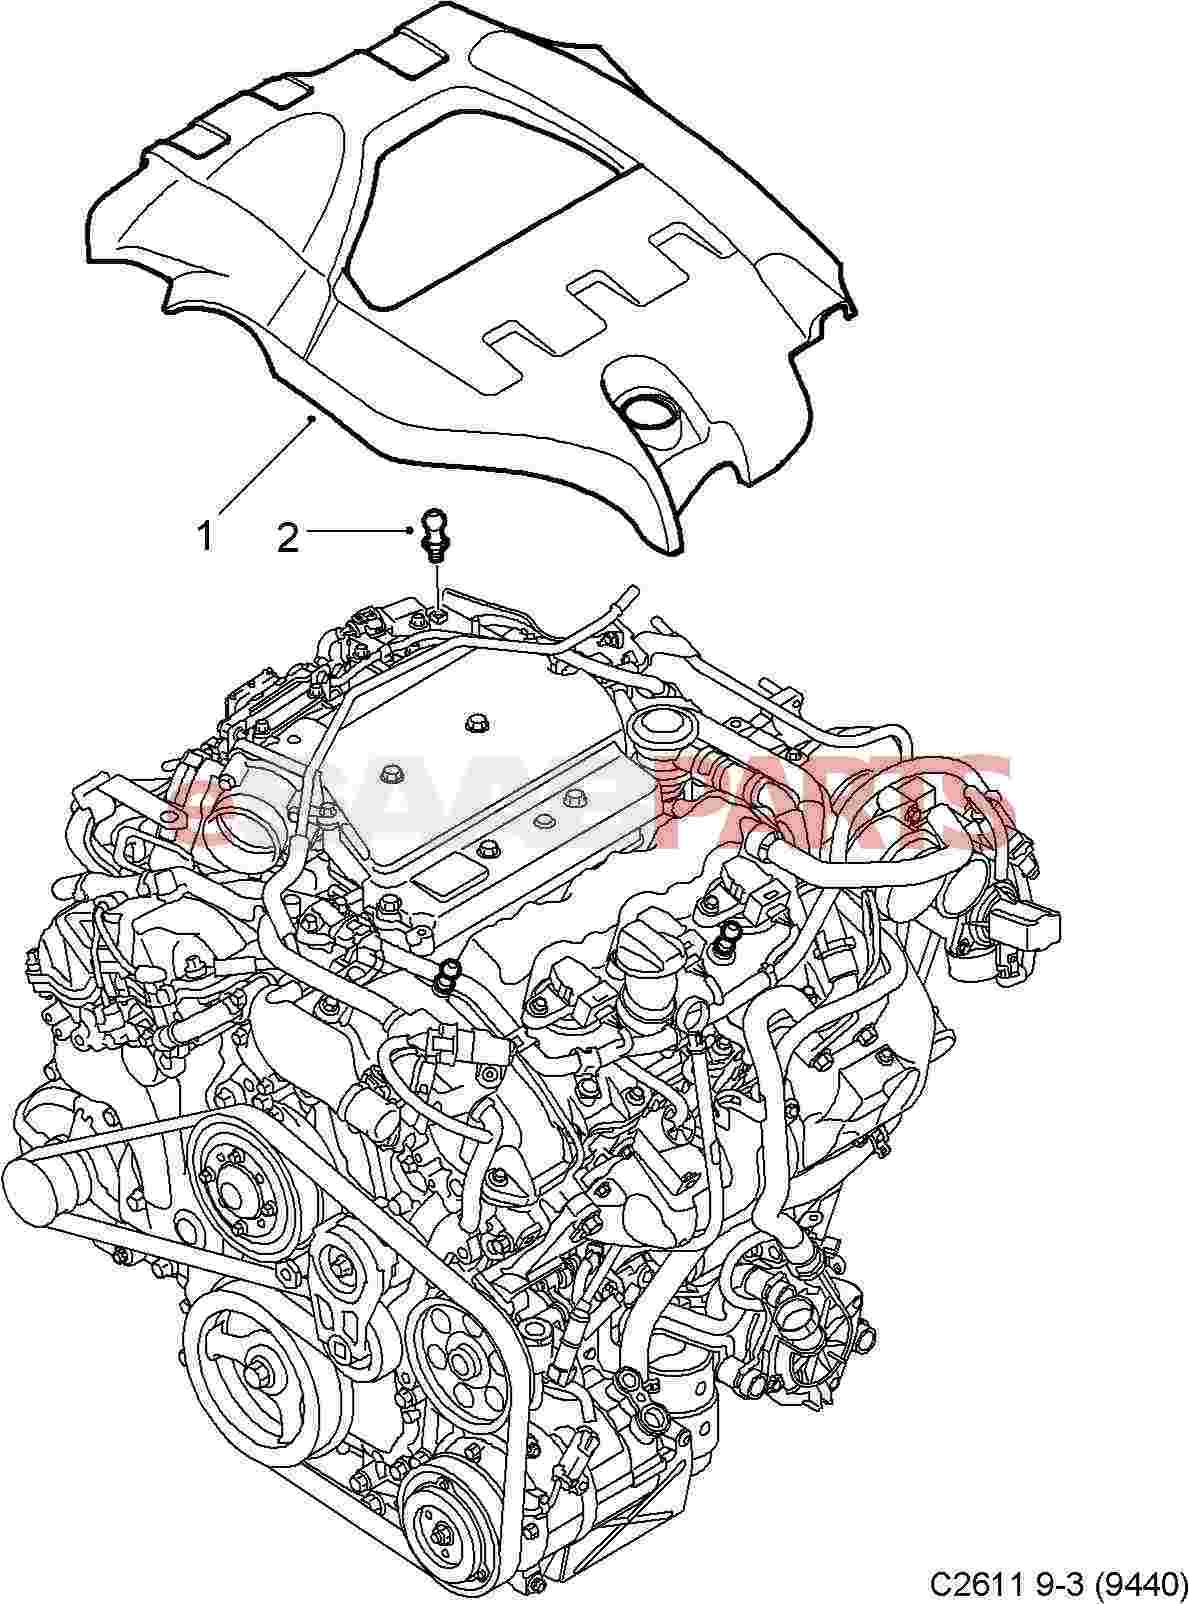 Saab 93 Engine Diagram